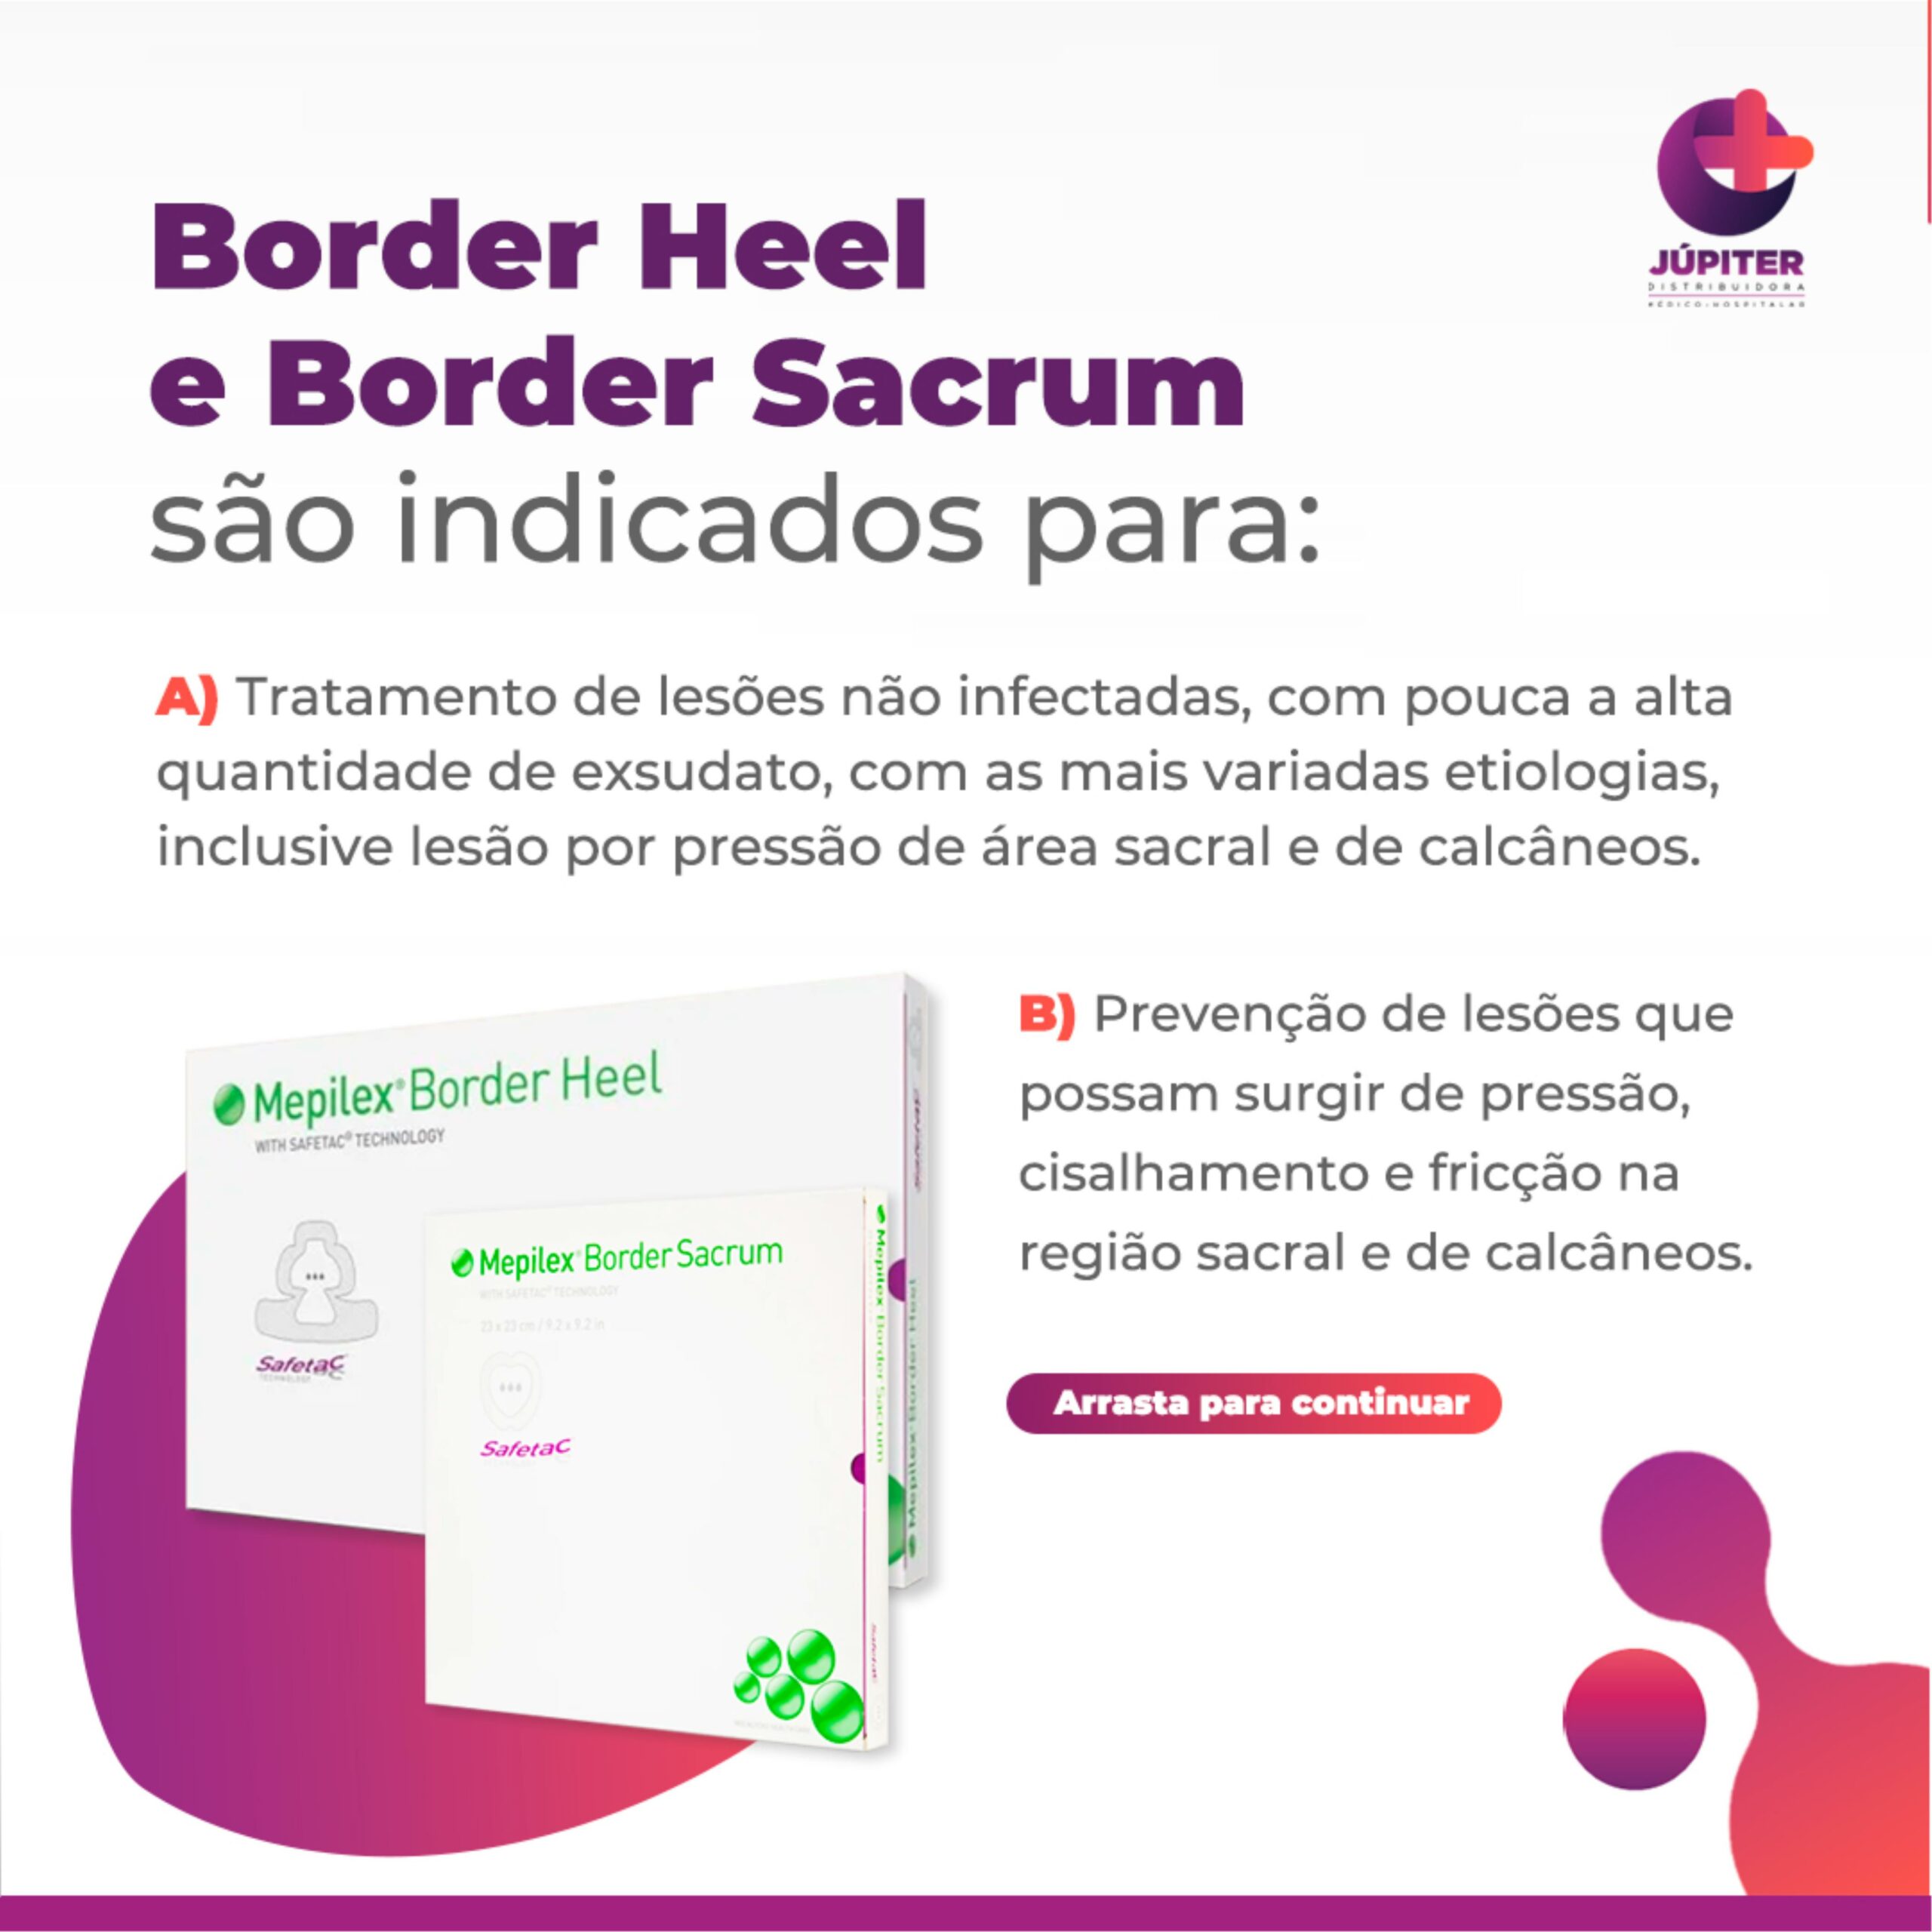 Indicação de uso Mepilex Border Heel e Mepilex Border Sacrum